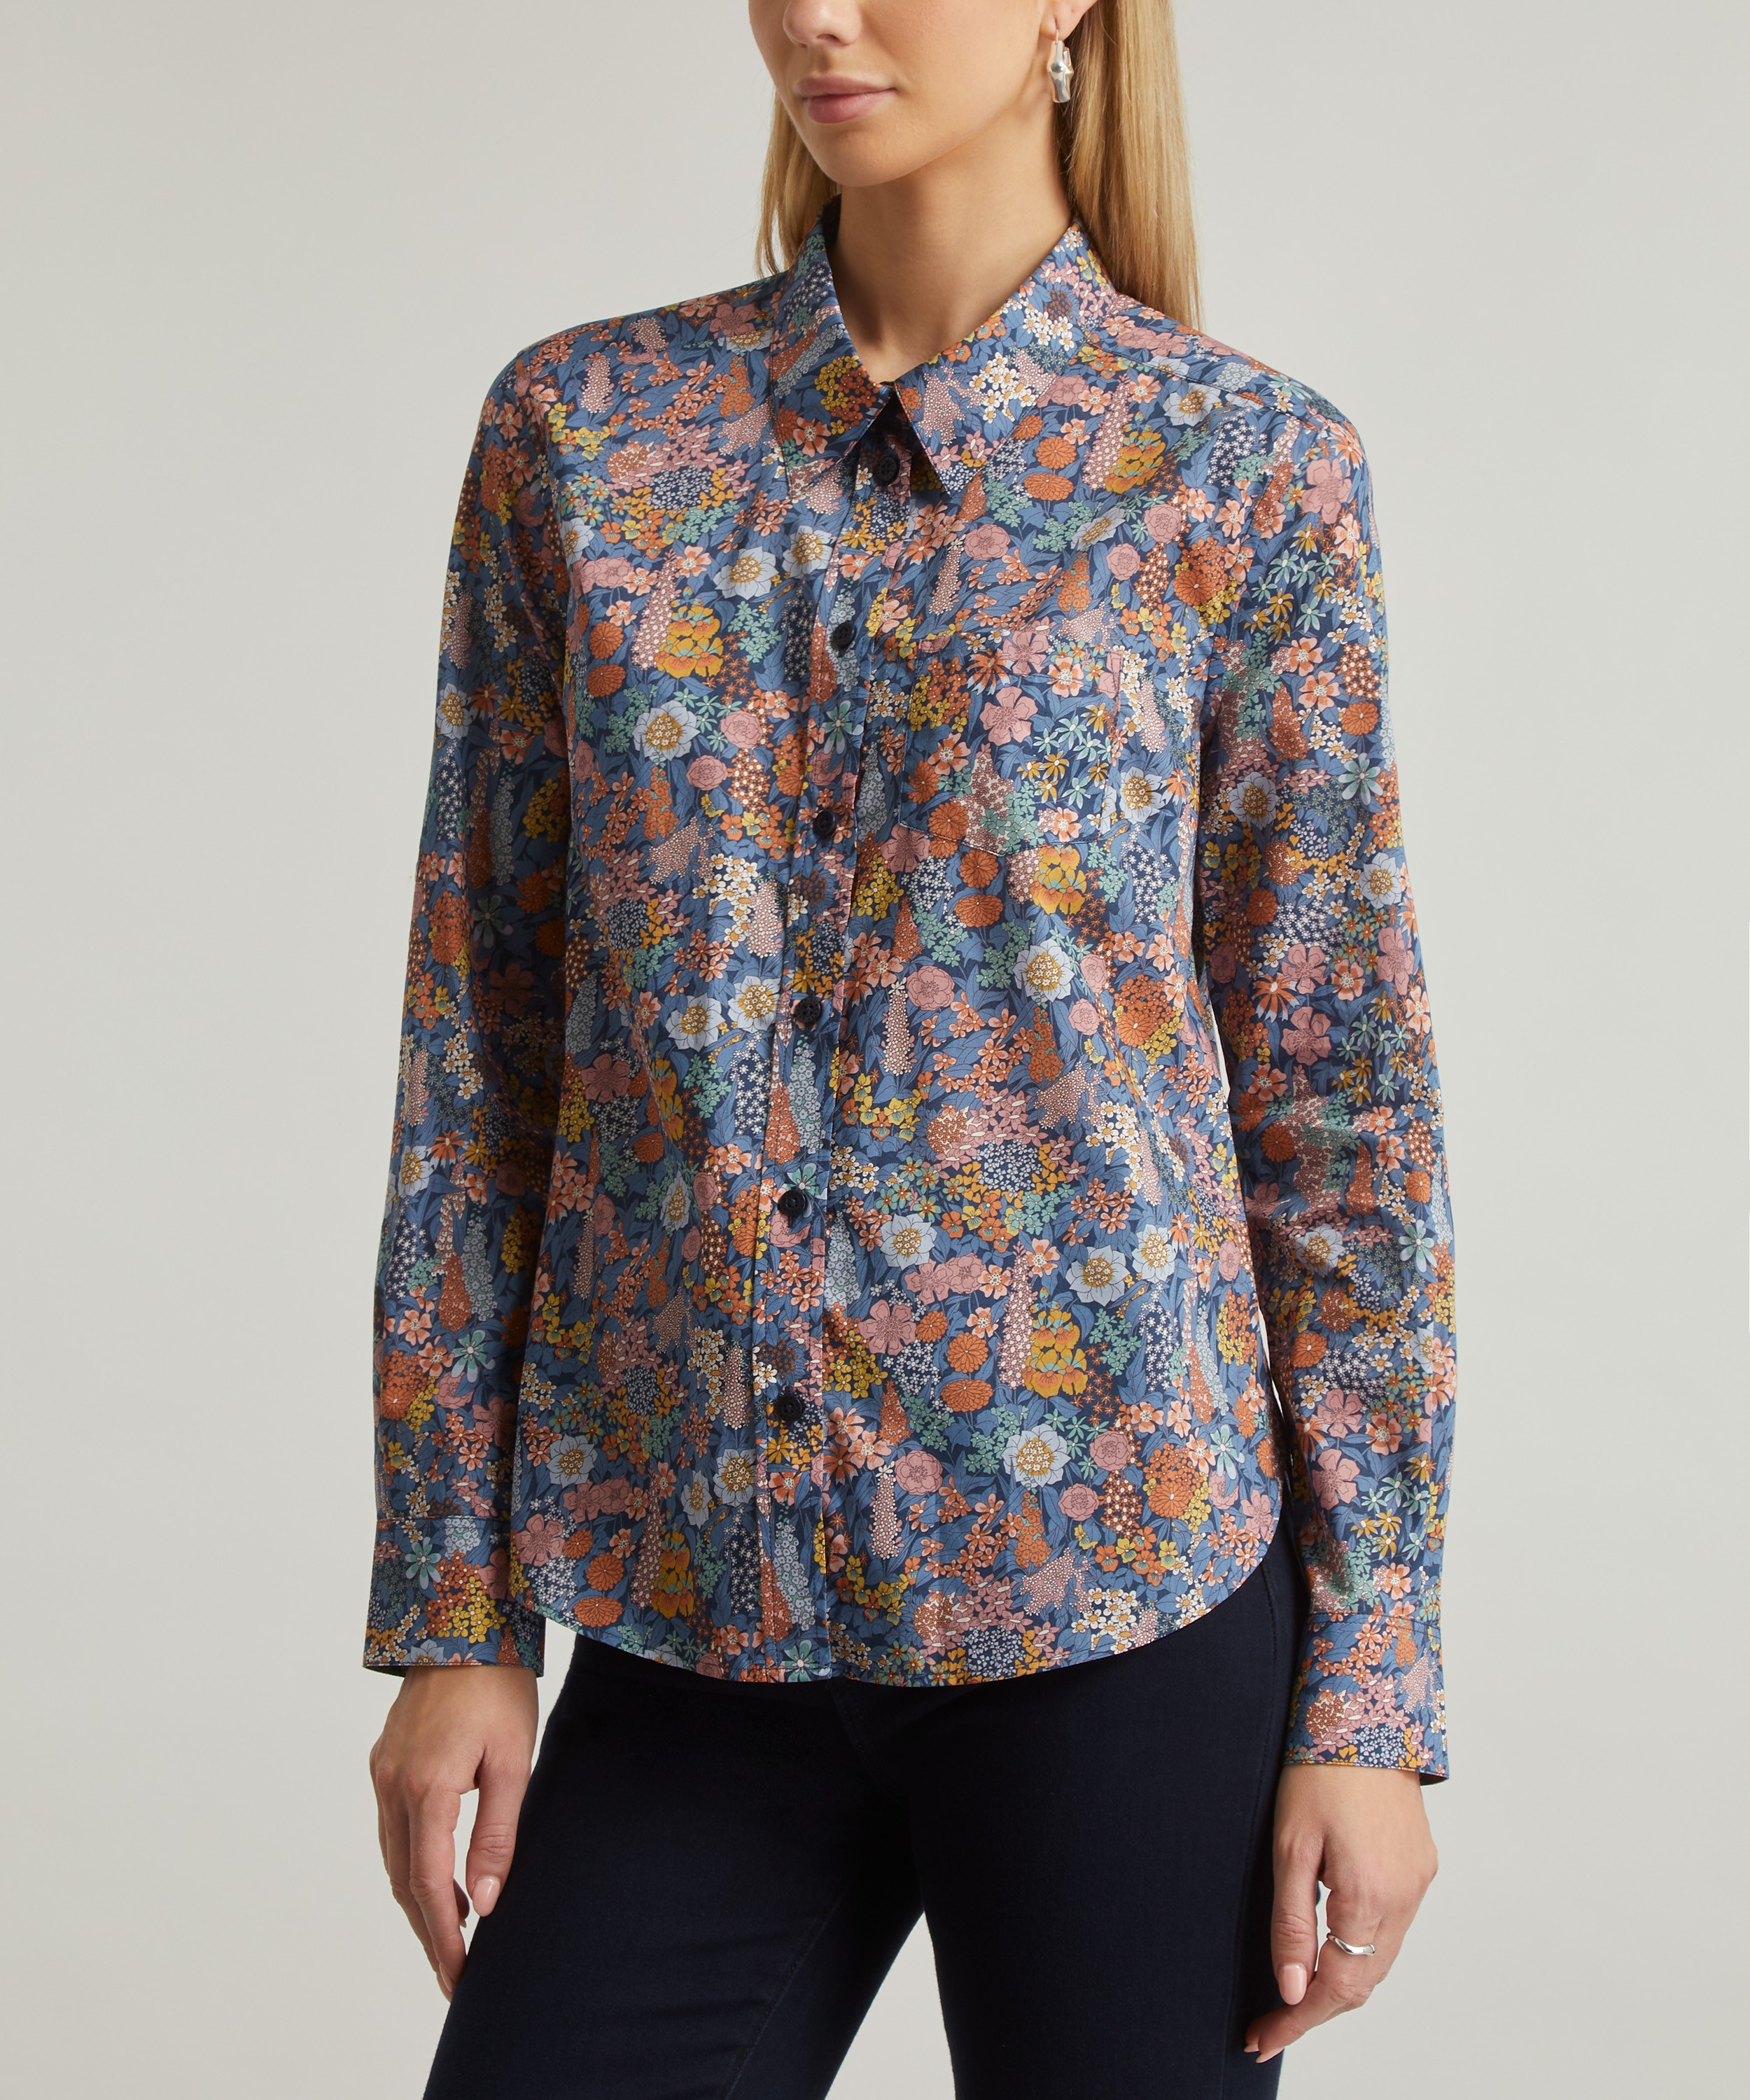 Liberty Fabrics - Ciara Tana Lawn™ Cotton image number 1